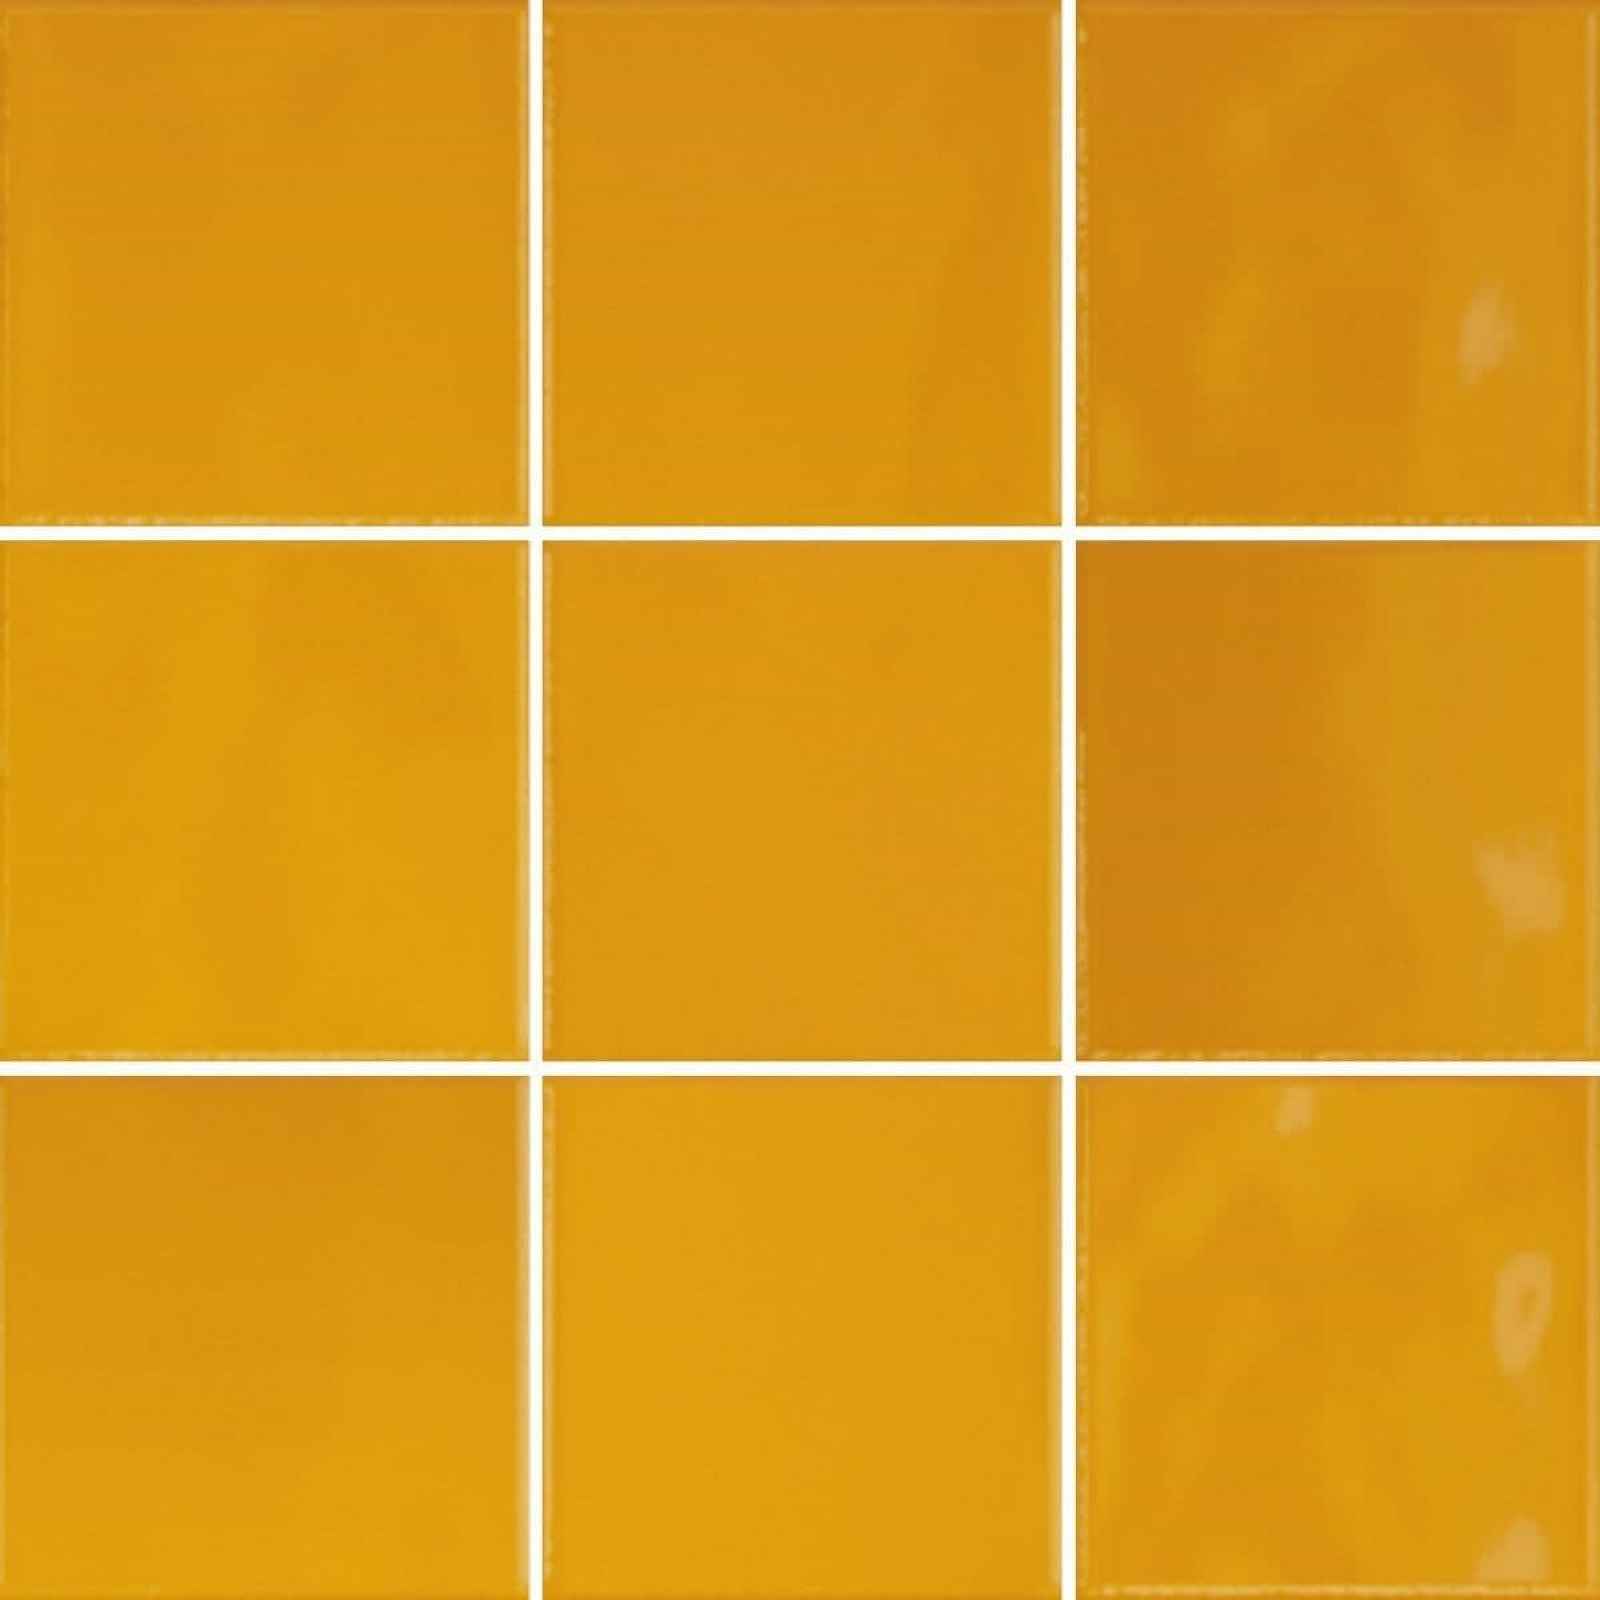 Obklad Vitra Retromix amber yellow 10x10 cm lesk K9484238